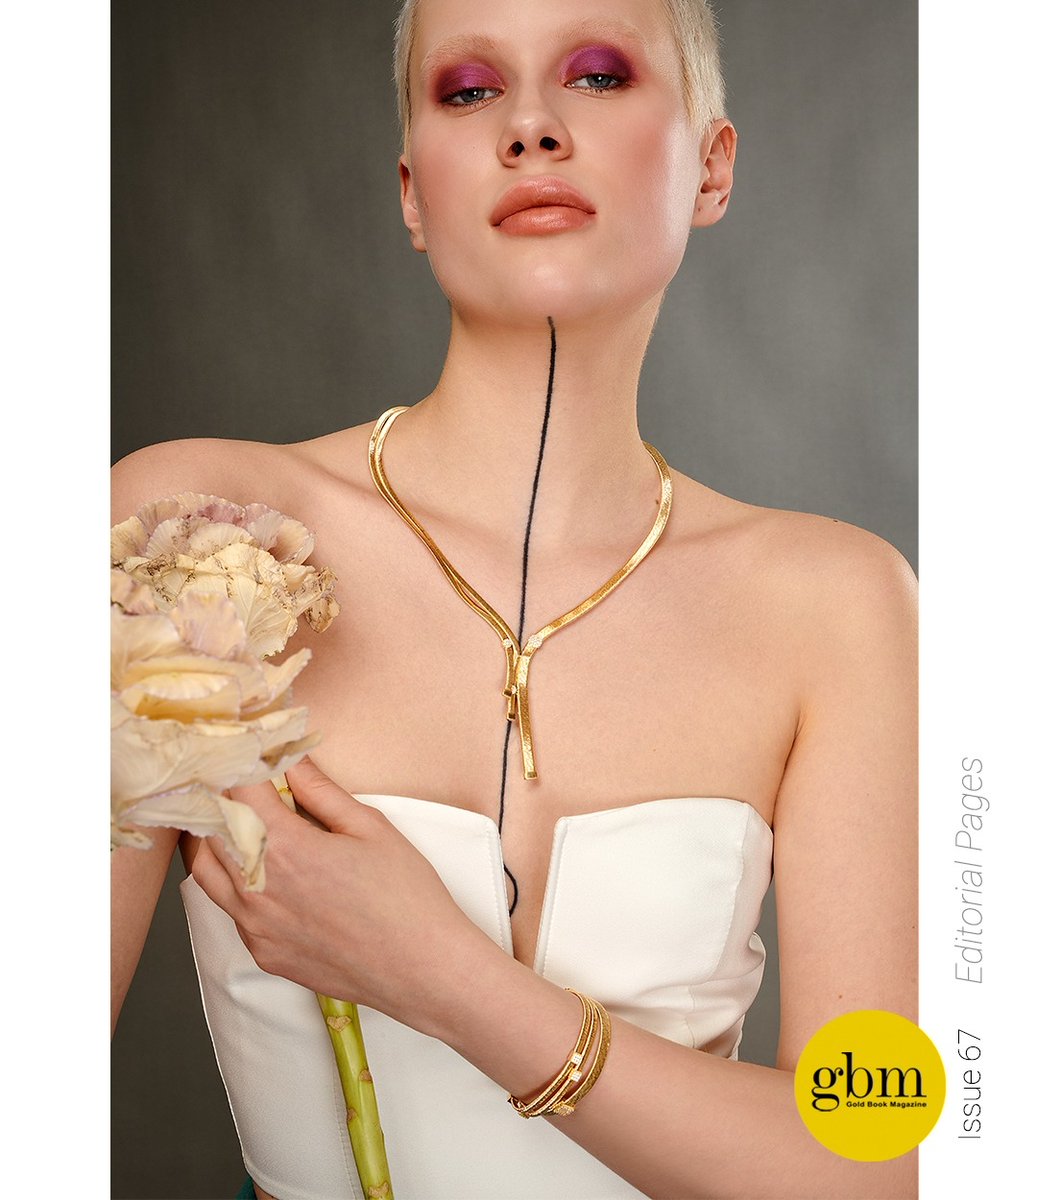 #GoldBookMagazine #editorialshoot #image #consept #style⁠
#jewelleryshoot #fashionshoot #67thissue #IstanbulJewelryShow